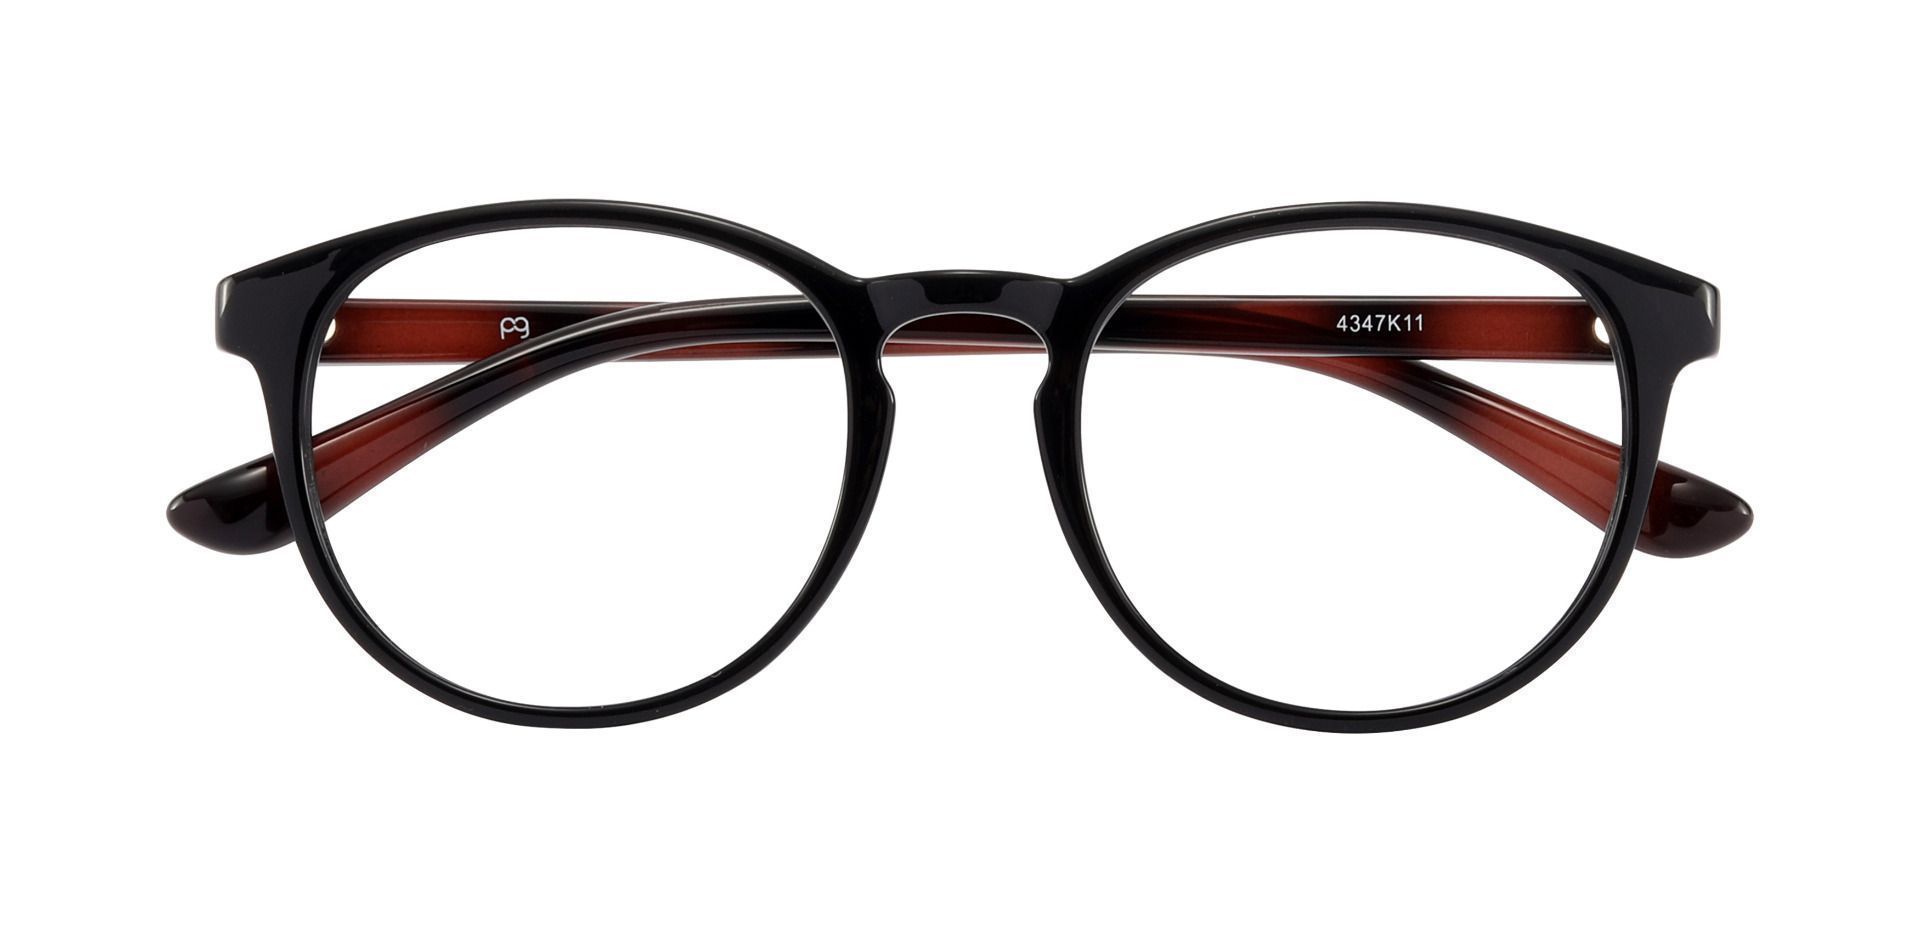 Clarita Oval Prescription Glasses - Black